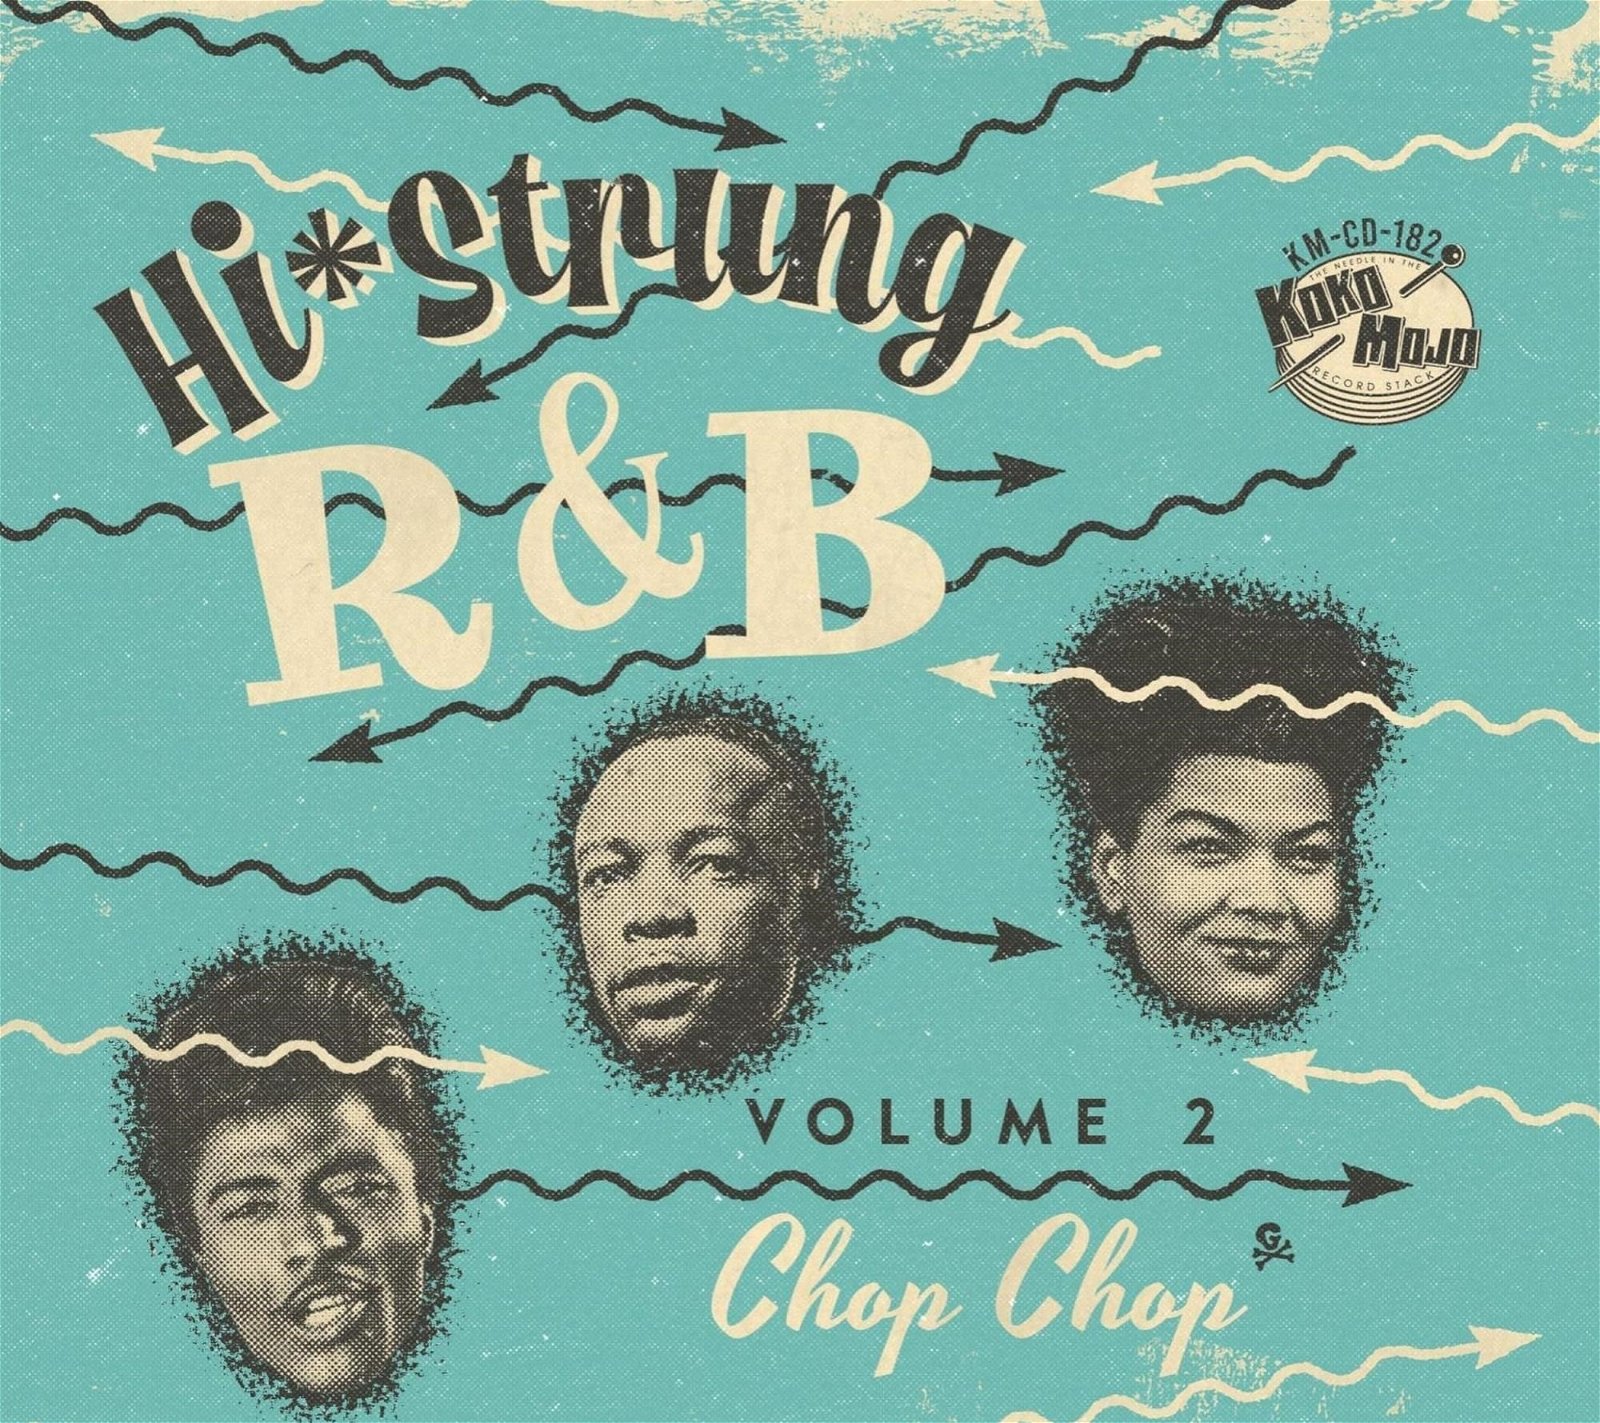 CD Shop - V/A HI-STRUNG R&B VOL.2